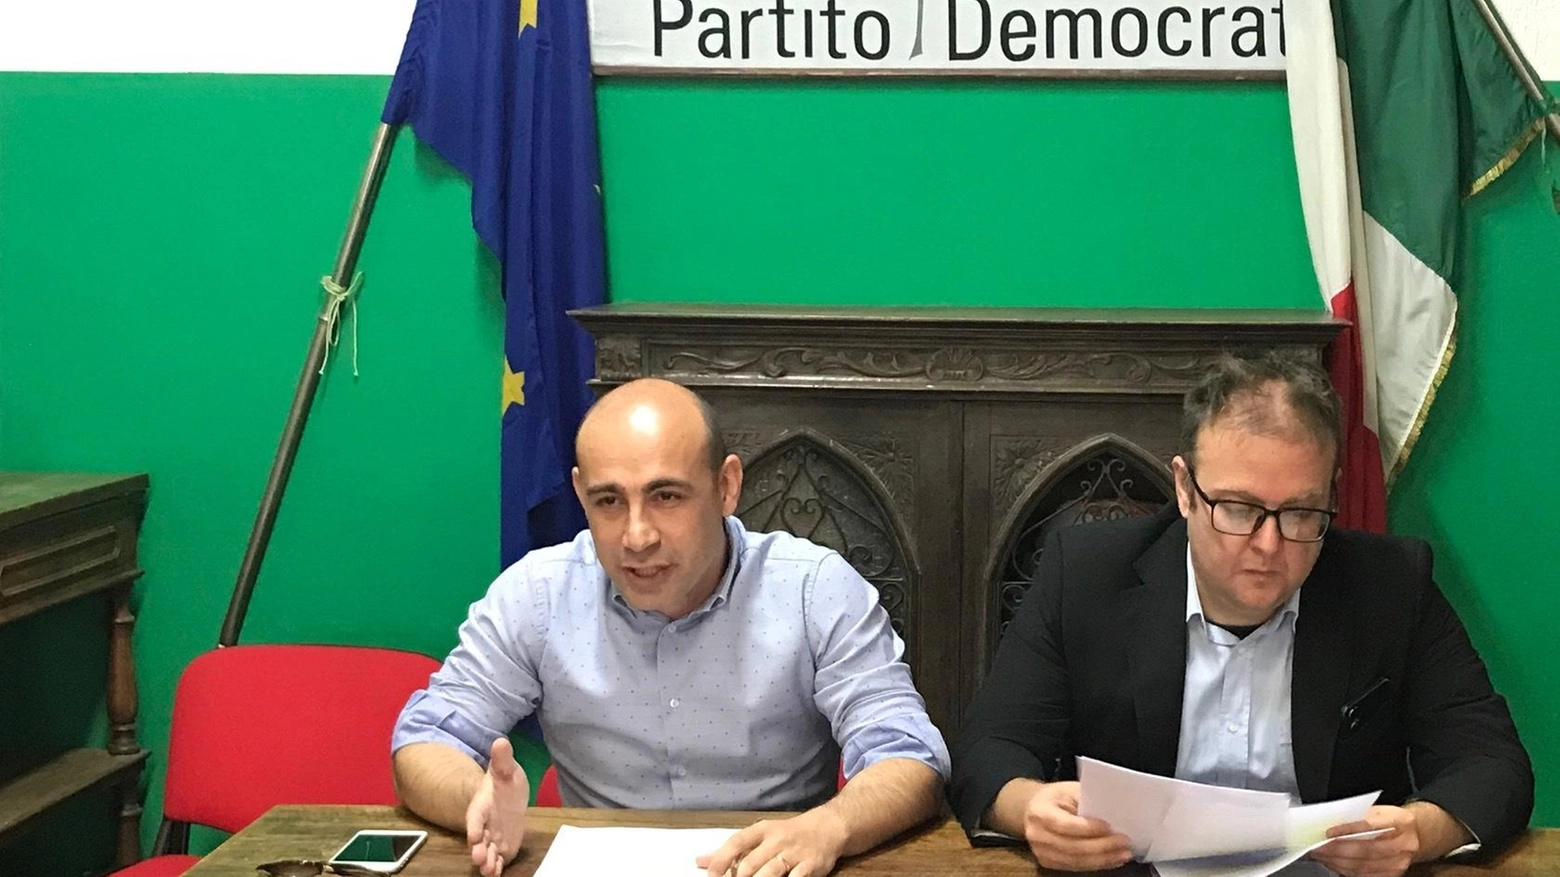 Attilio Acciaccaferri si candida col Pd: "La mia area esclusa dalla politica"